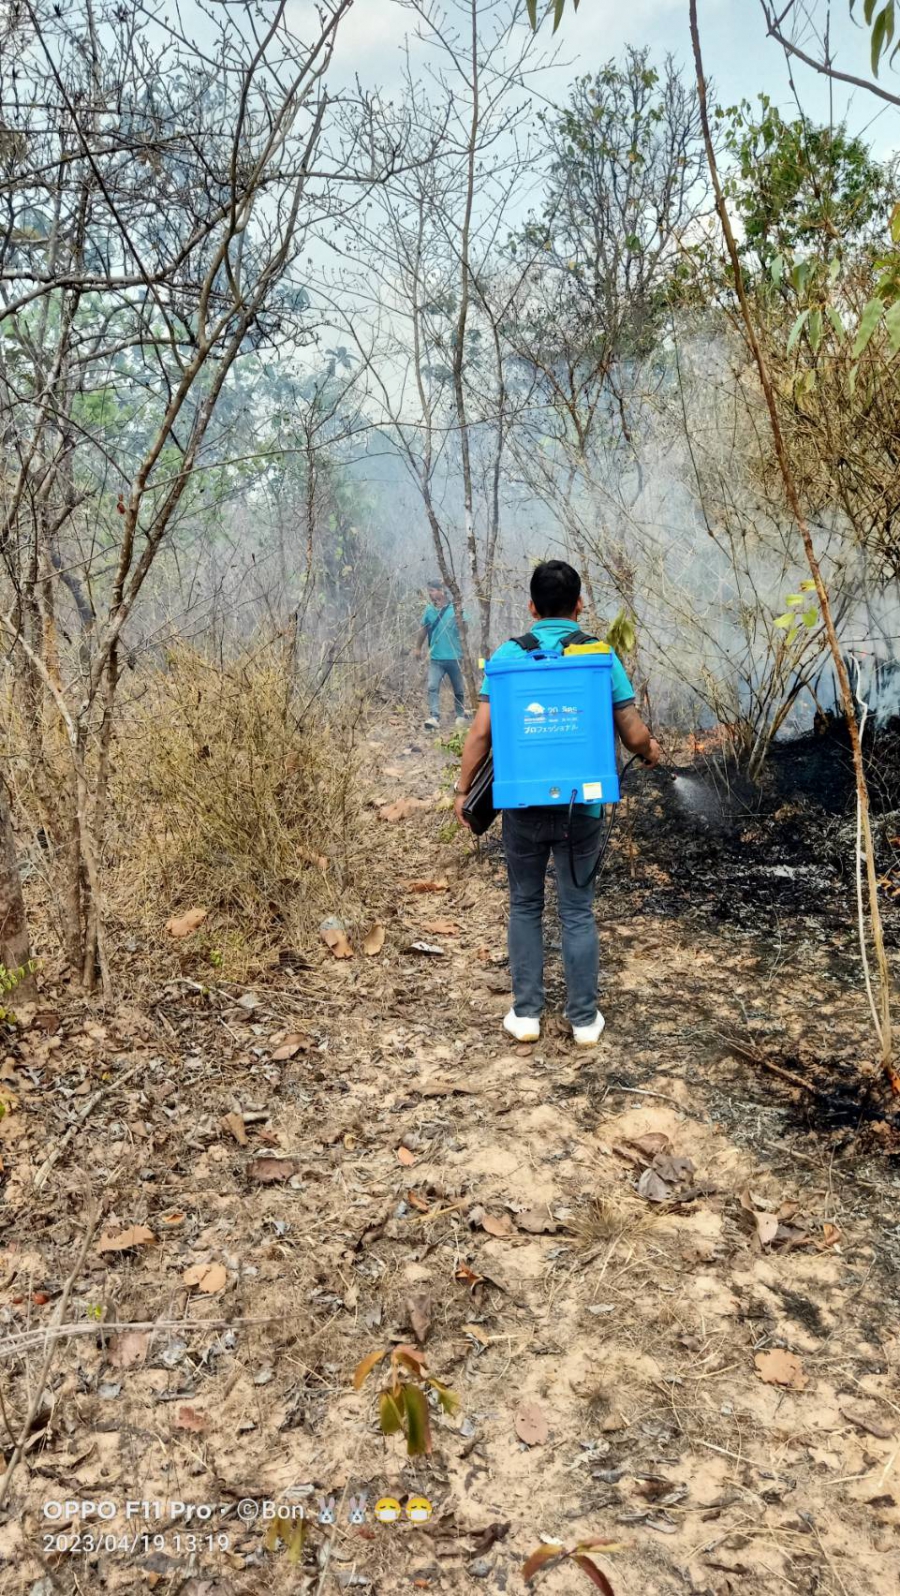 เจ้าหน้าที่องค์การบริหารส่วนตำบลห้วยข่า ออกปฏิบัติหน้าที่ดับไฟไหม้ป่าสาธารณประโยชน์ (โคกนางัว) บ้านห้วยข่าทักษิณ หมู่ 15